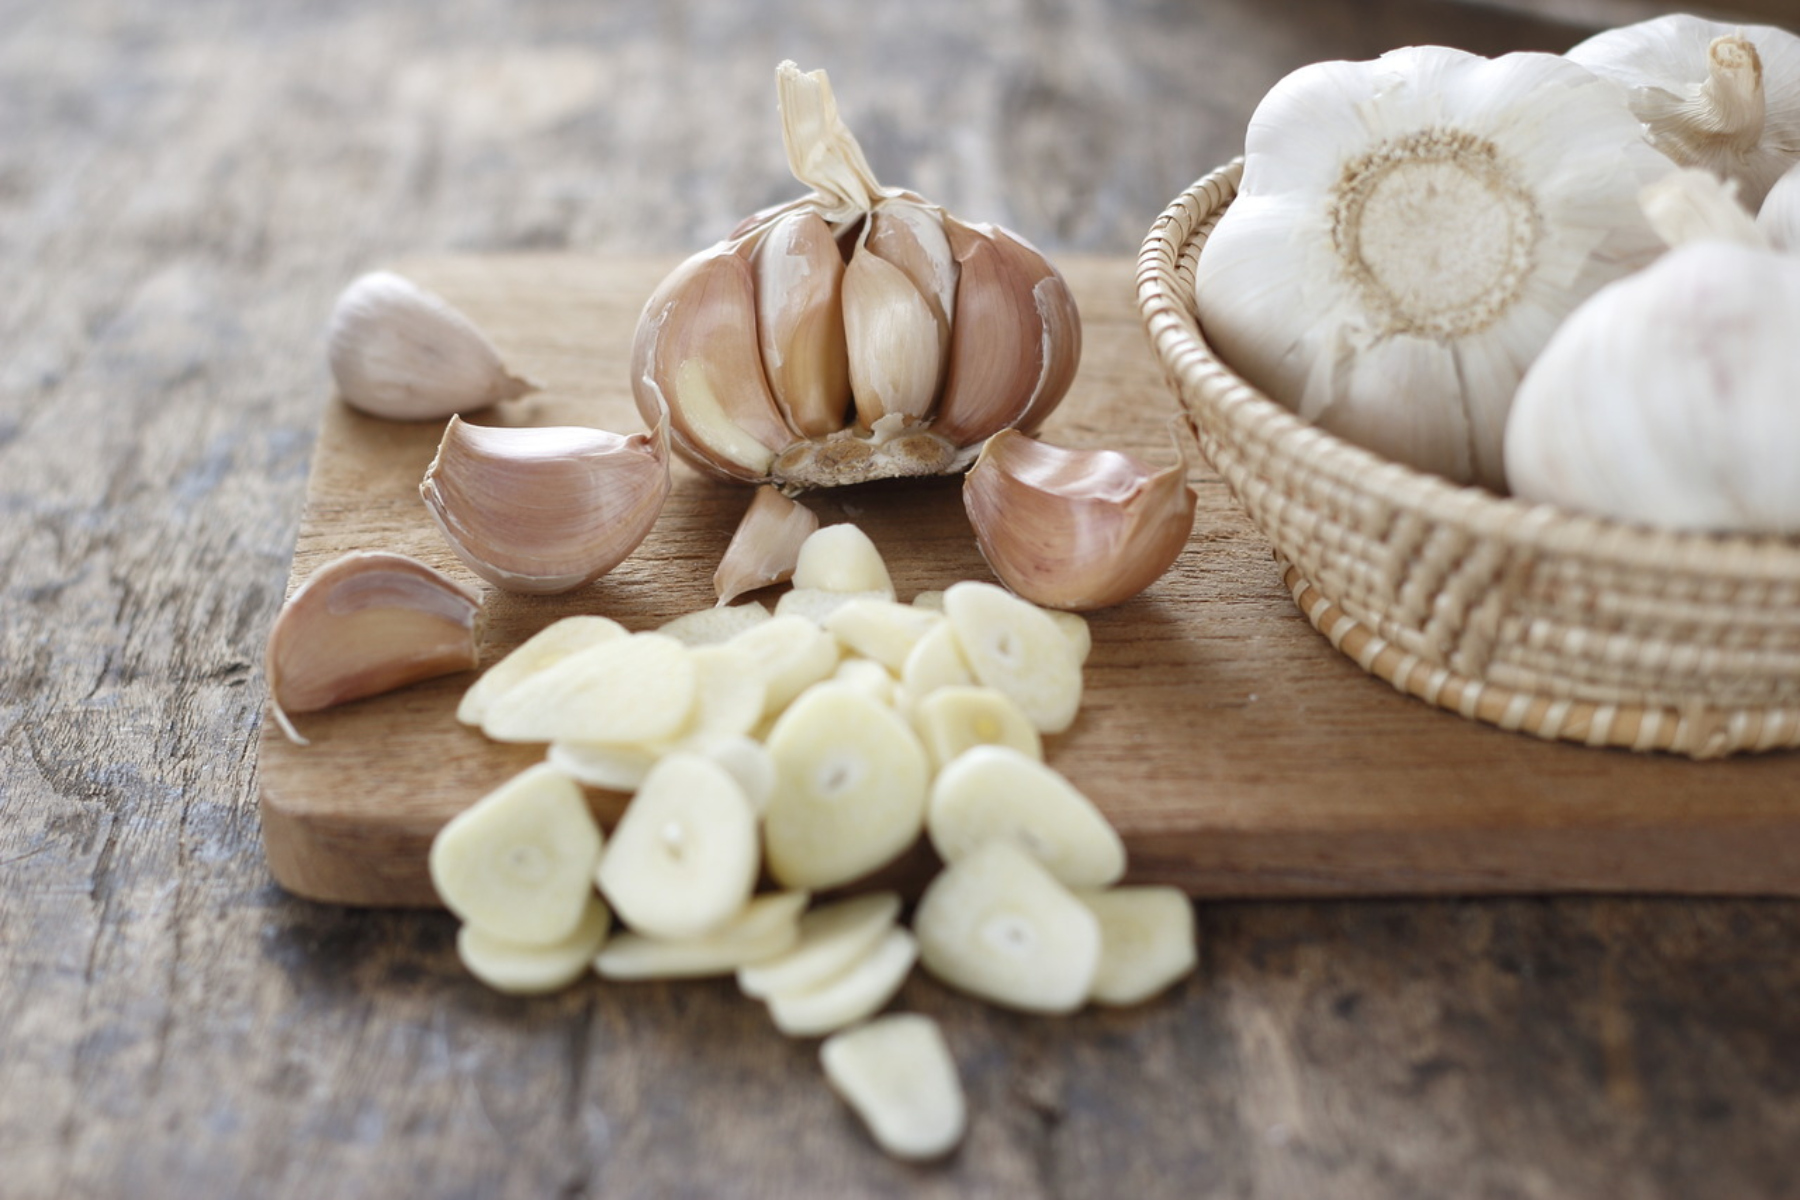 Σκόρδο IBS: Προσοχή στο σκόρδο για όσους πάσχουν από Σύνδρομο Ευερέθιστου Εντέρου